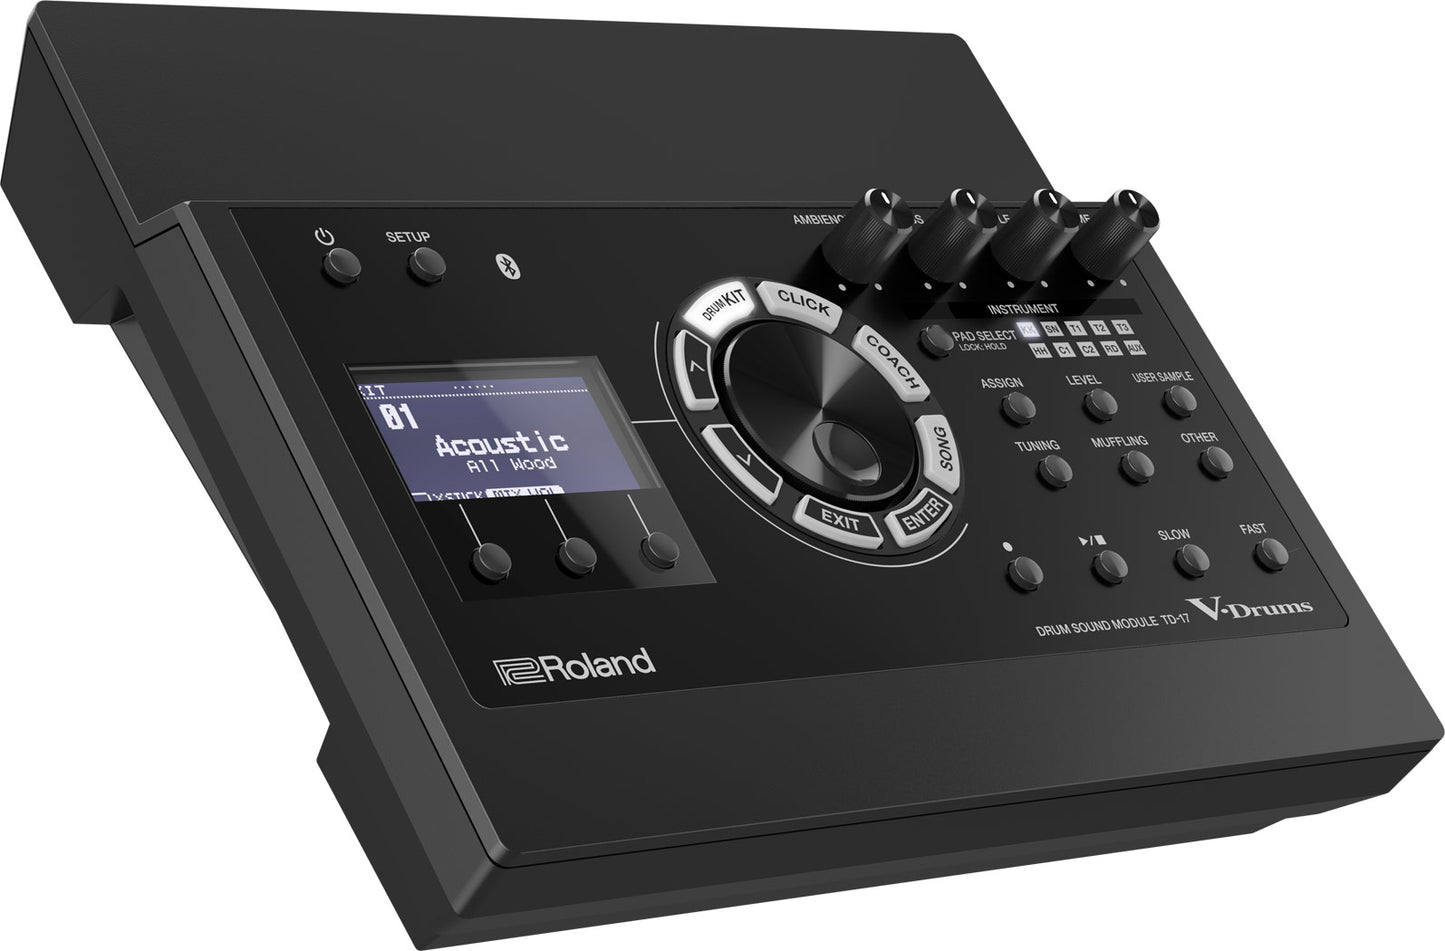 Roland TD-17 Sound Module 電子鼓音源主機